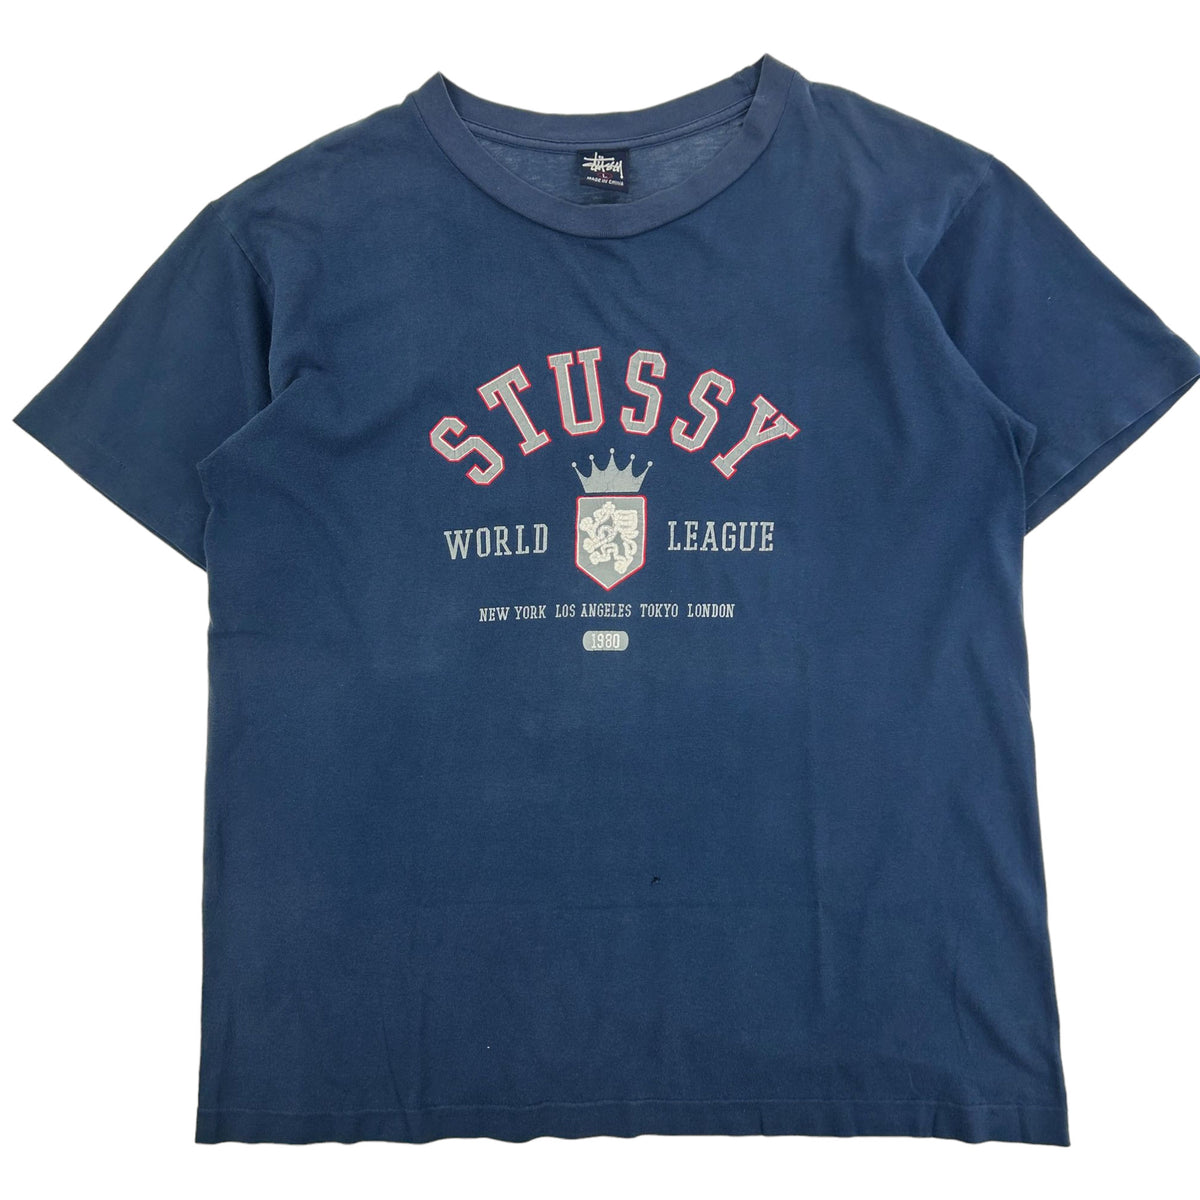 Vintage Stussy World League Graphic T-Shirt Size M